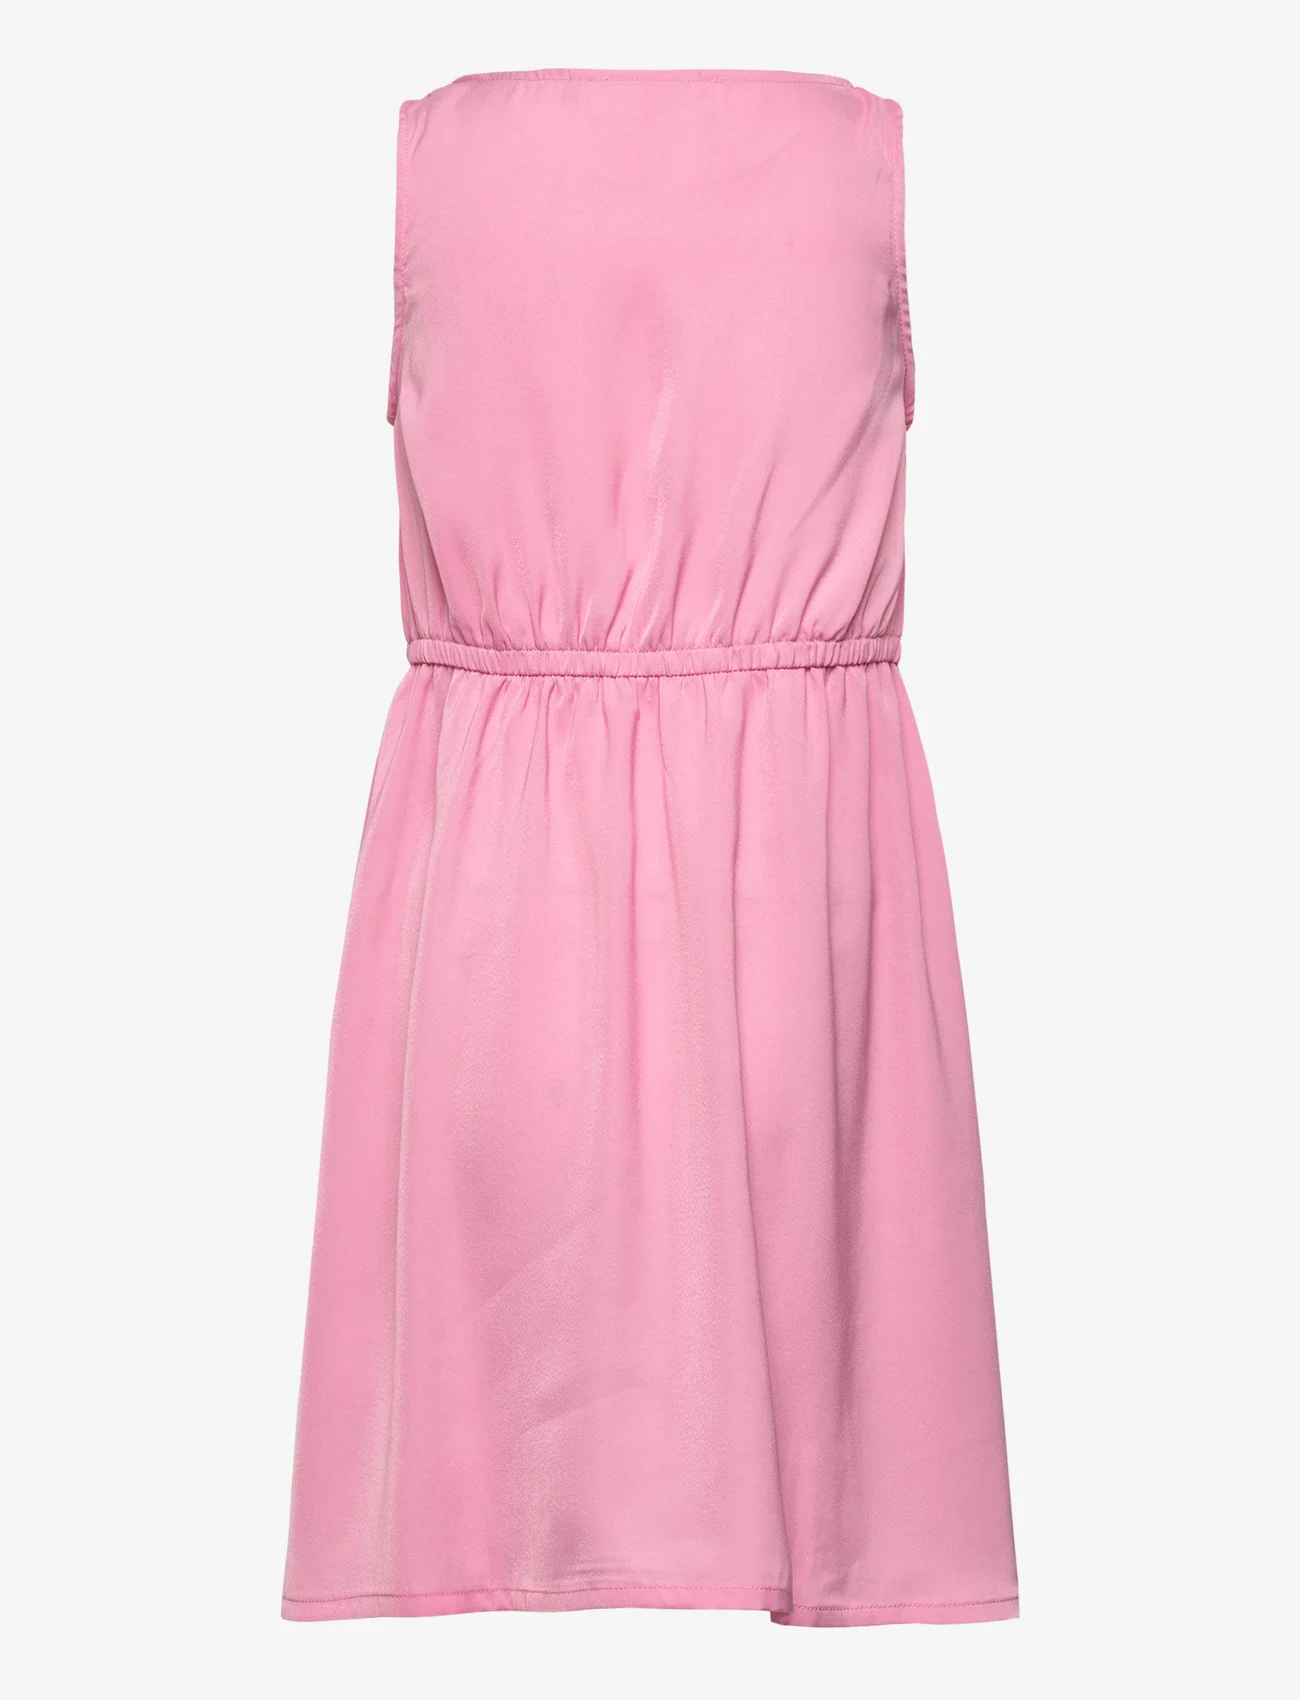 Rosemunde Kids - Dress - kjoler uten ermer i avslappet stil - bubblegum pink - 1